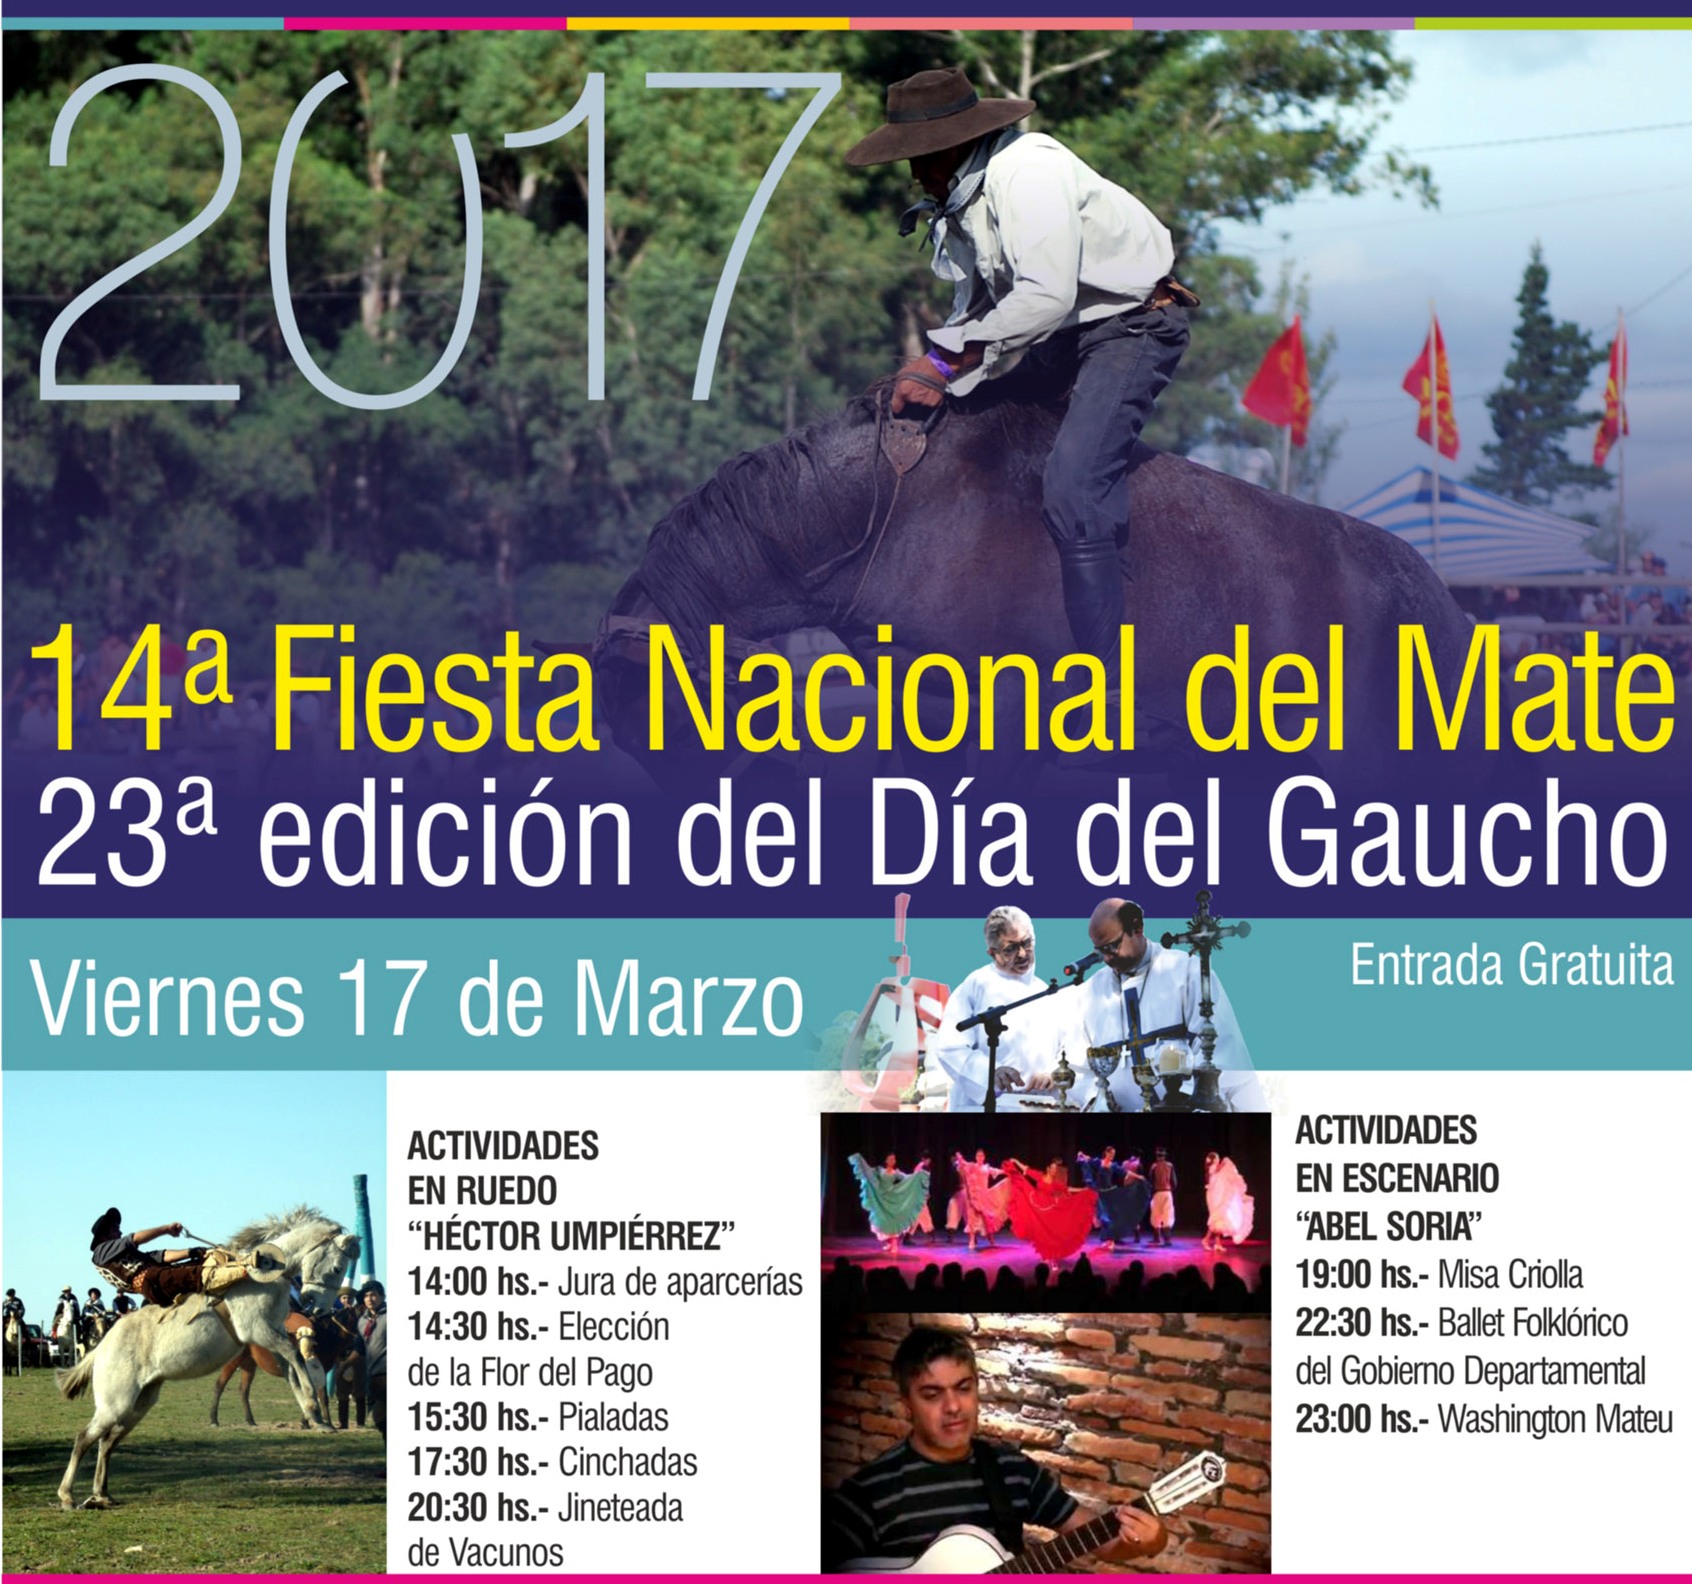 6151 INTENDENCIA Fiesta del Mate Programa MAILING MARZO (1) - copia